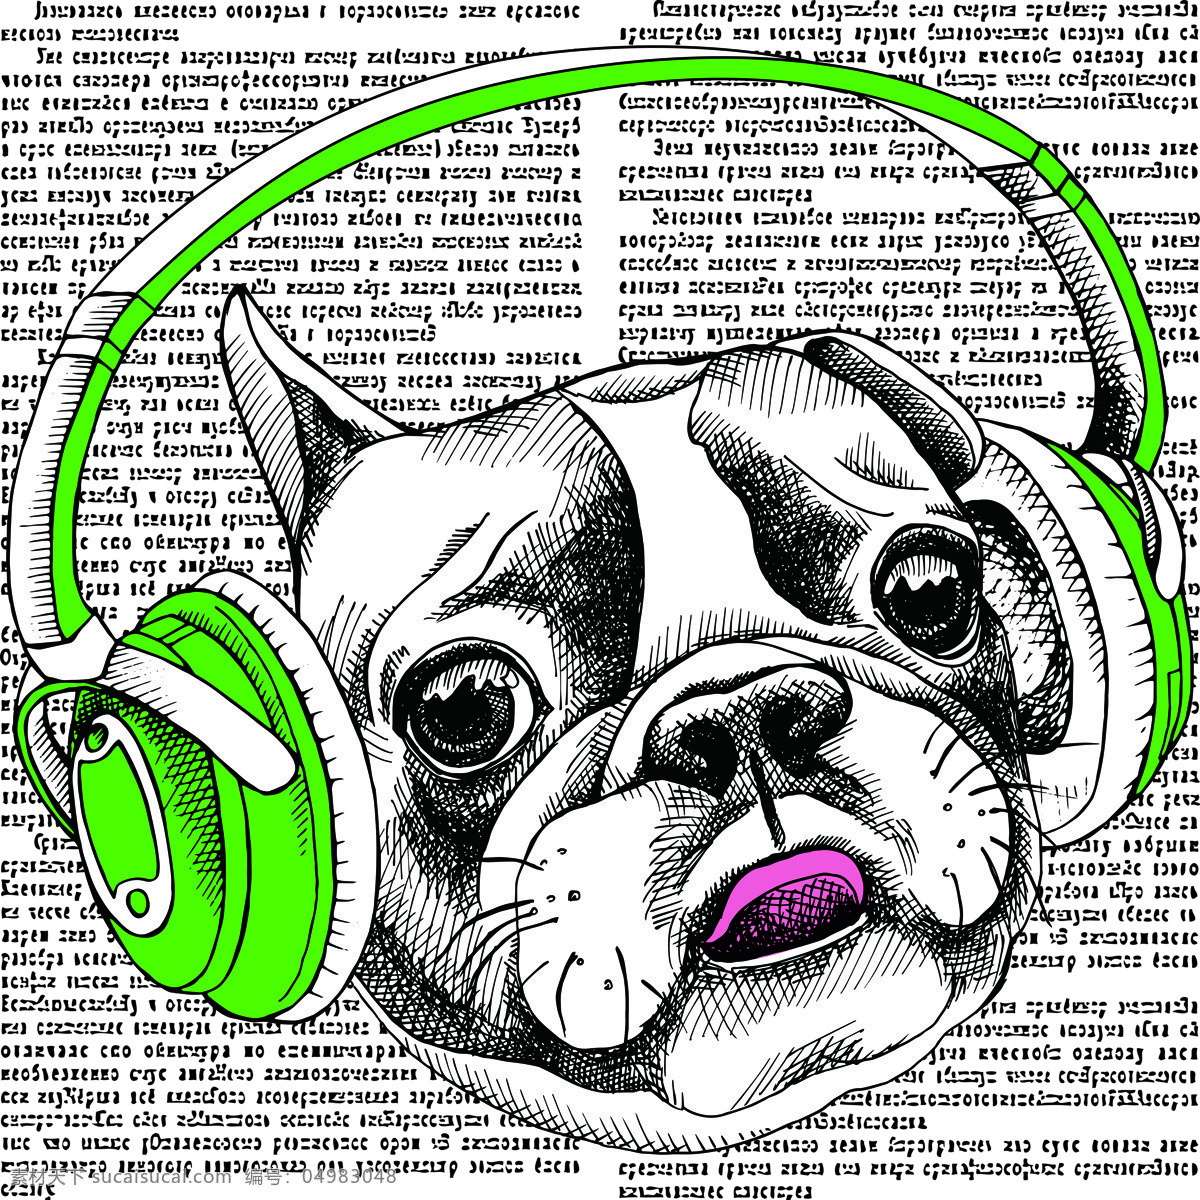 戴耳机的狗 耳机 狗 报纸 背景 舌头 报纸素材 环境设计 无框画